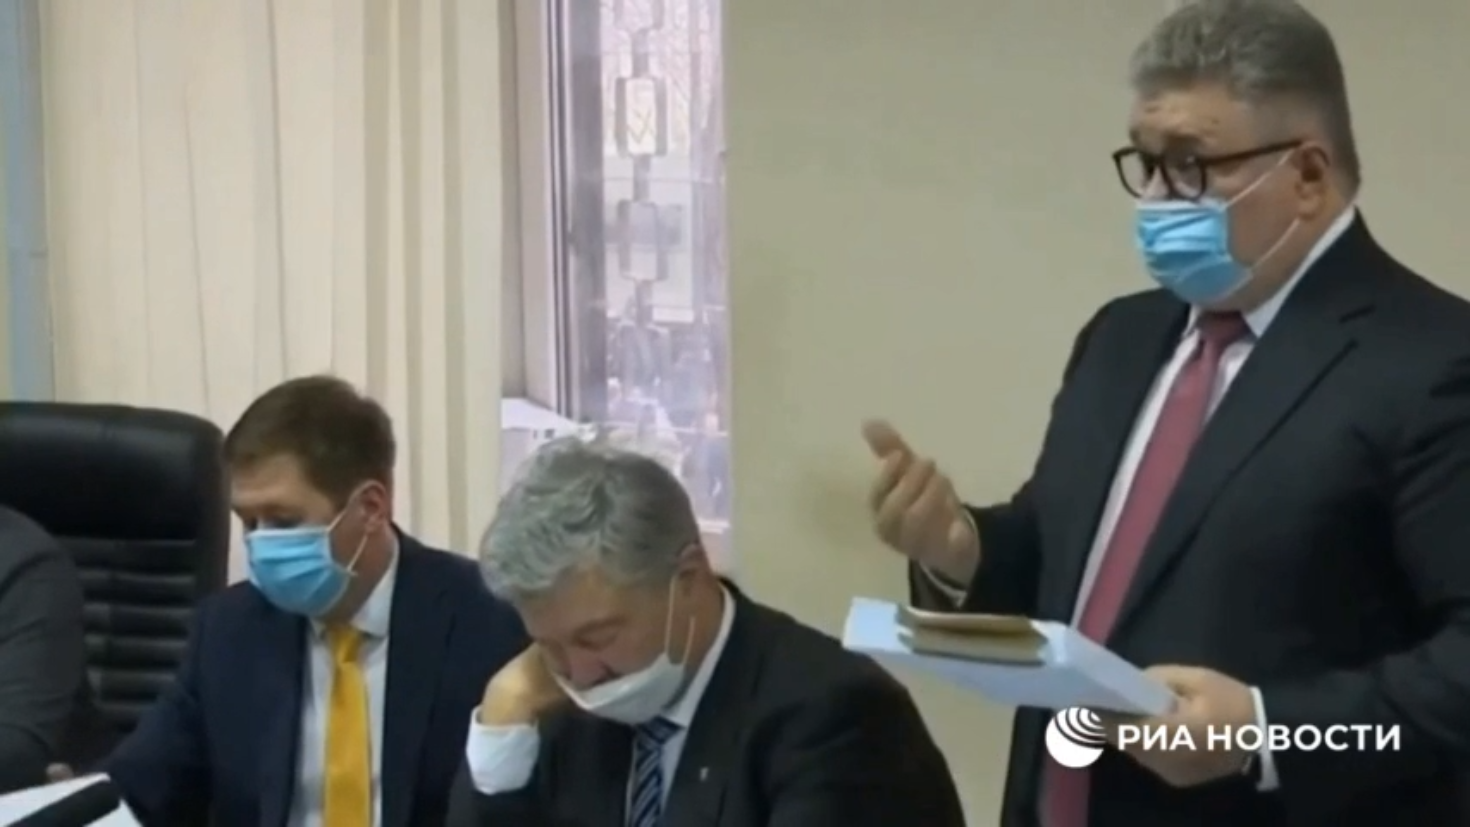 شاهد.. الرئيس الأوكراني السابق يغفو أثناء جلسة محاكمته بتهمة الخيانة العظمى